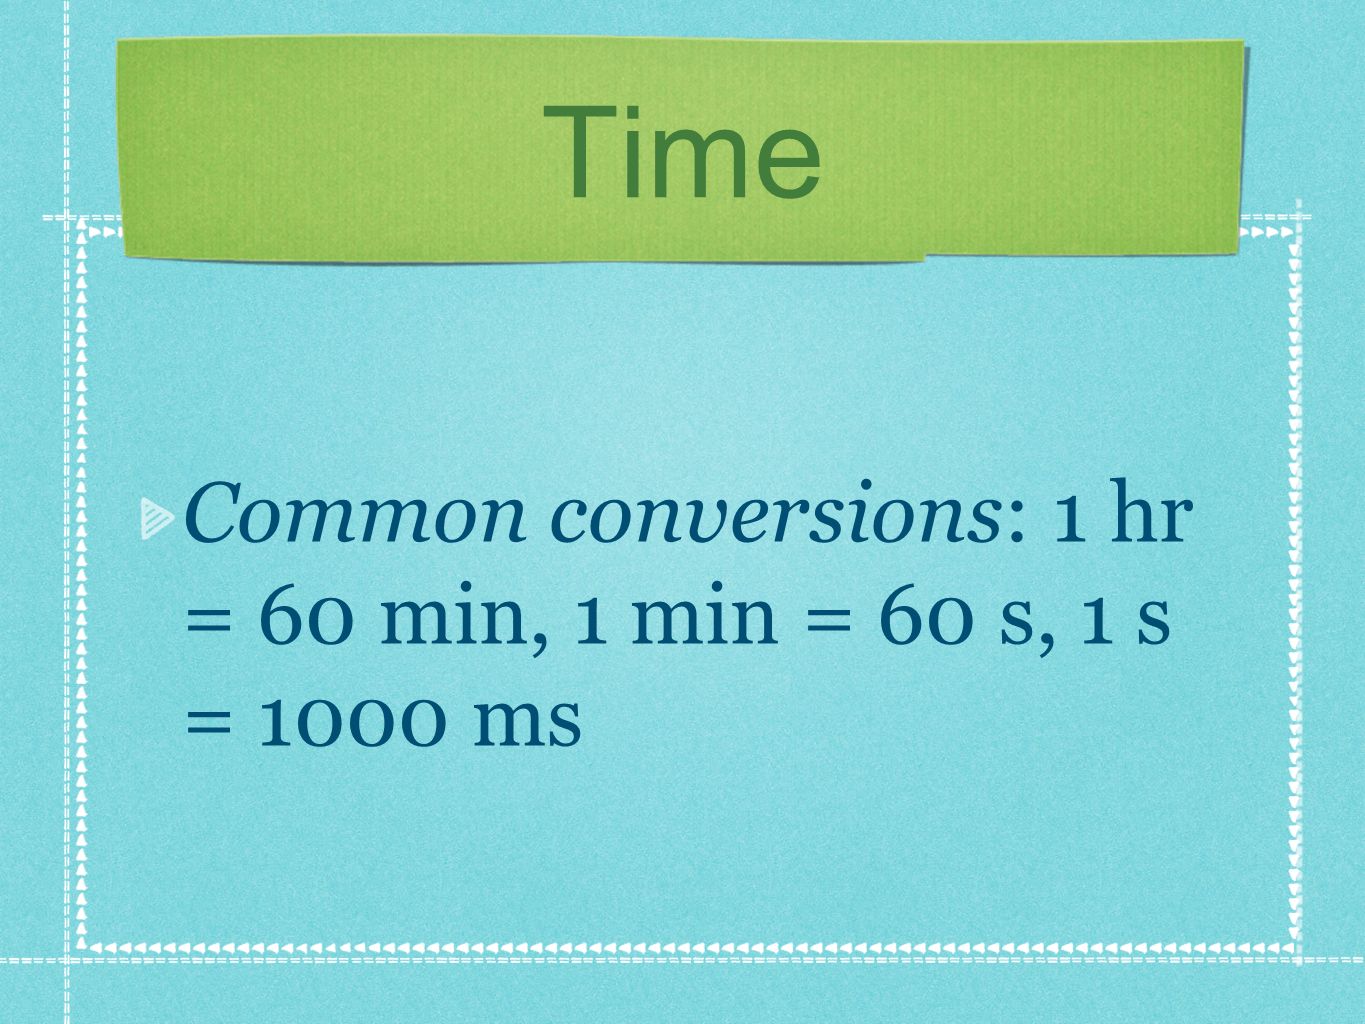 Common conversions: 1 hr = 60 min, 1 min = 60 s, 1 s = 1000 ms